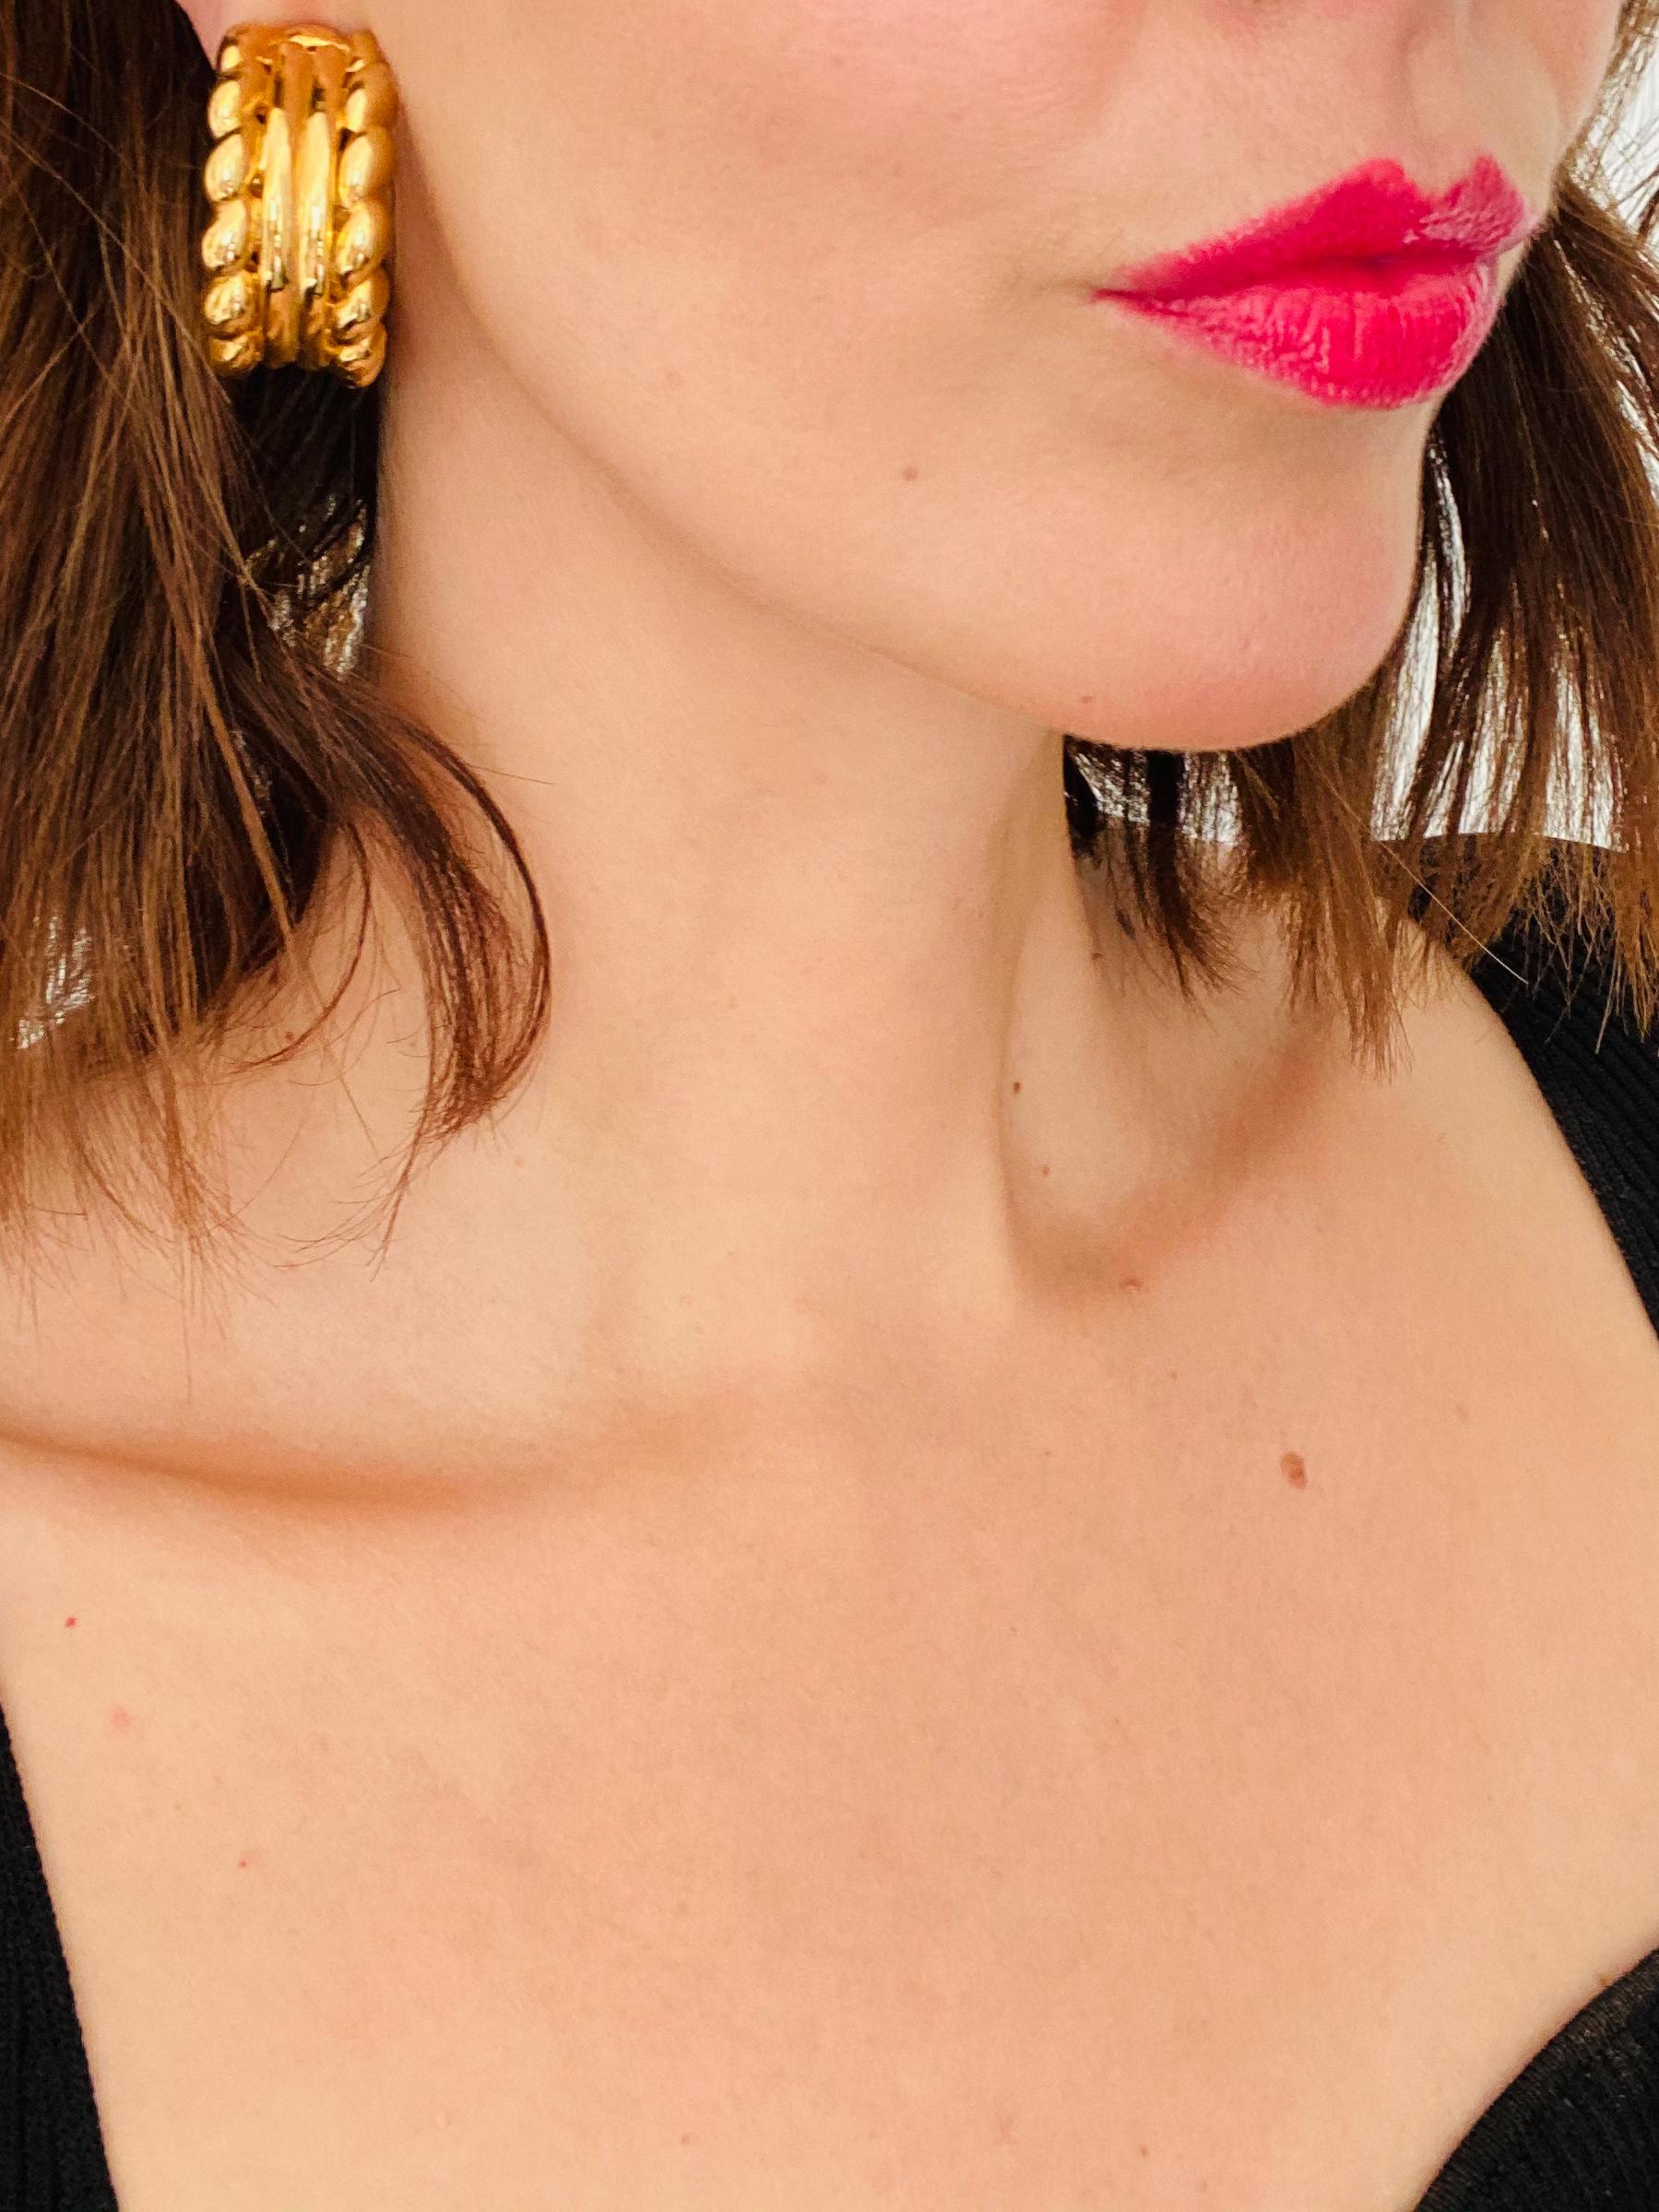 Givenchy Vintage 1980 Boucles d'oreilles à clip

Boucles d'oreilles en forme d'anneau de la maison Givenchy. Classique mais contemporain 

 Détail
-Fabriqué dans les années 1980
-Fabriqué en métal plaqué or
-Bracelet assorti également